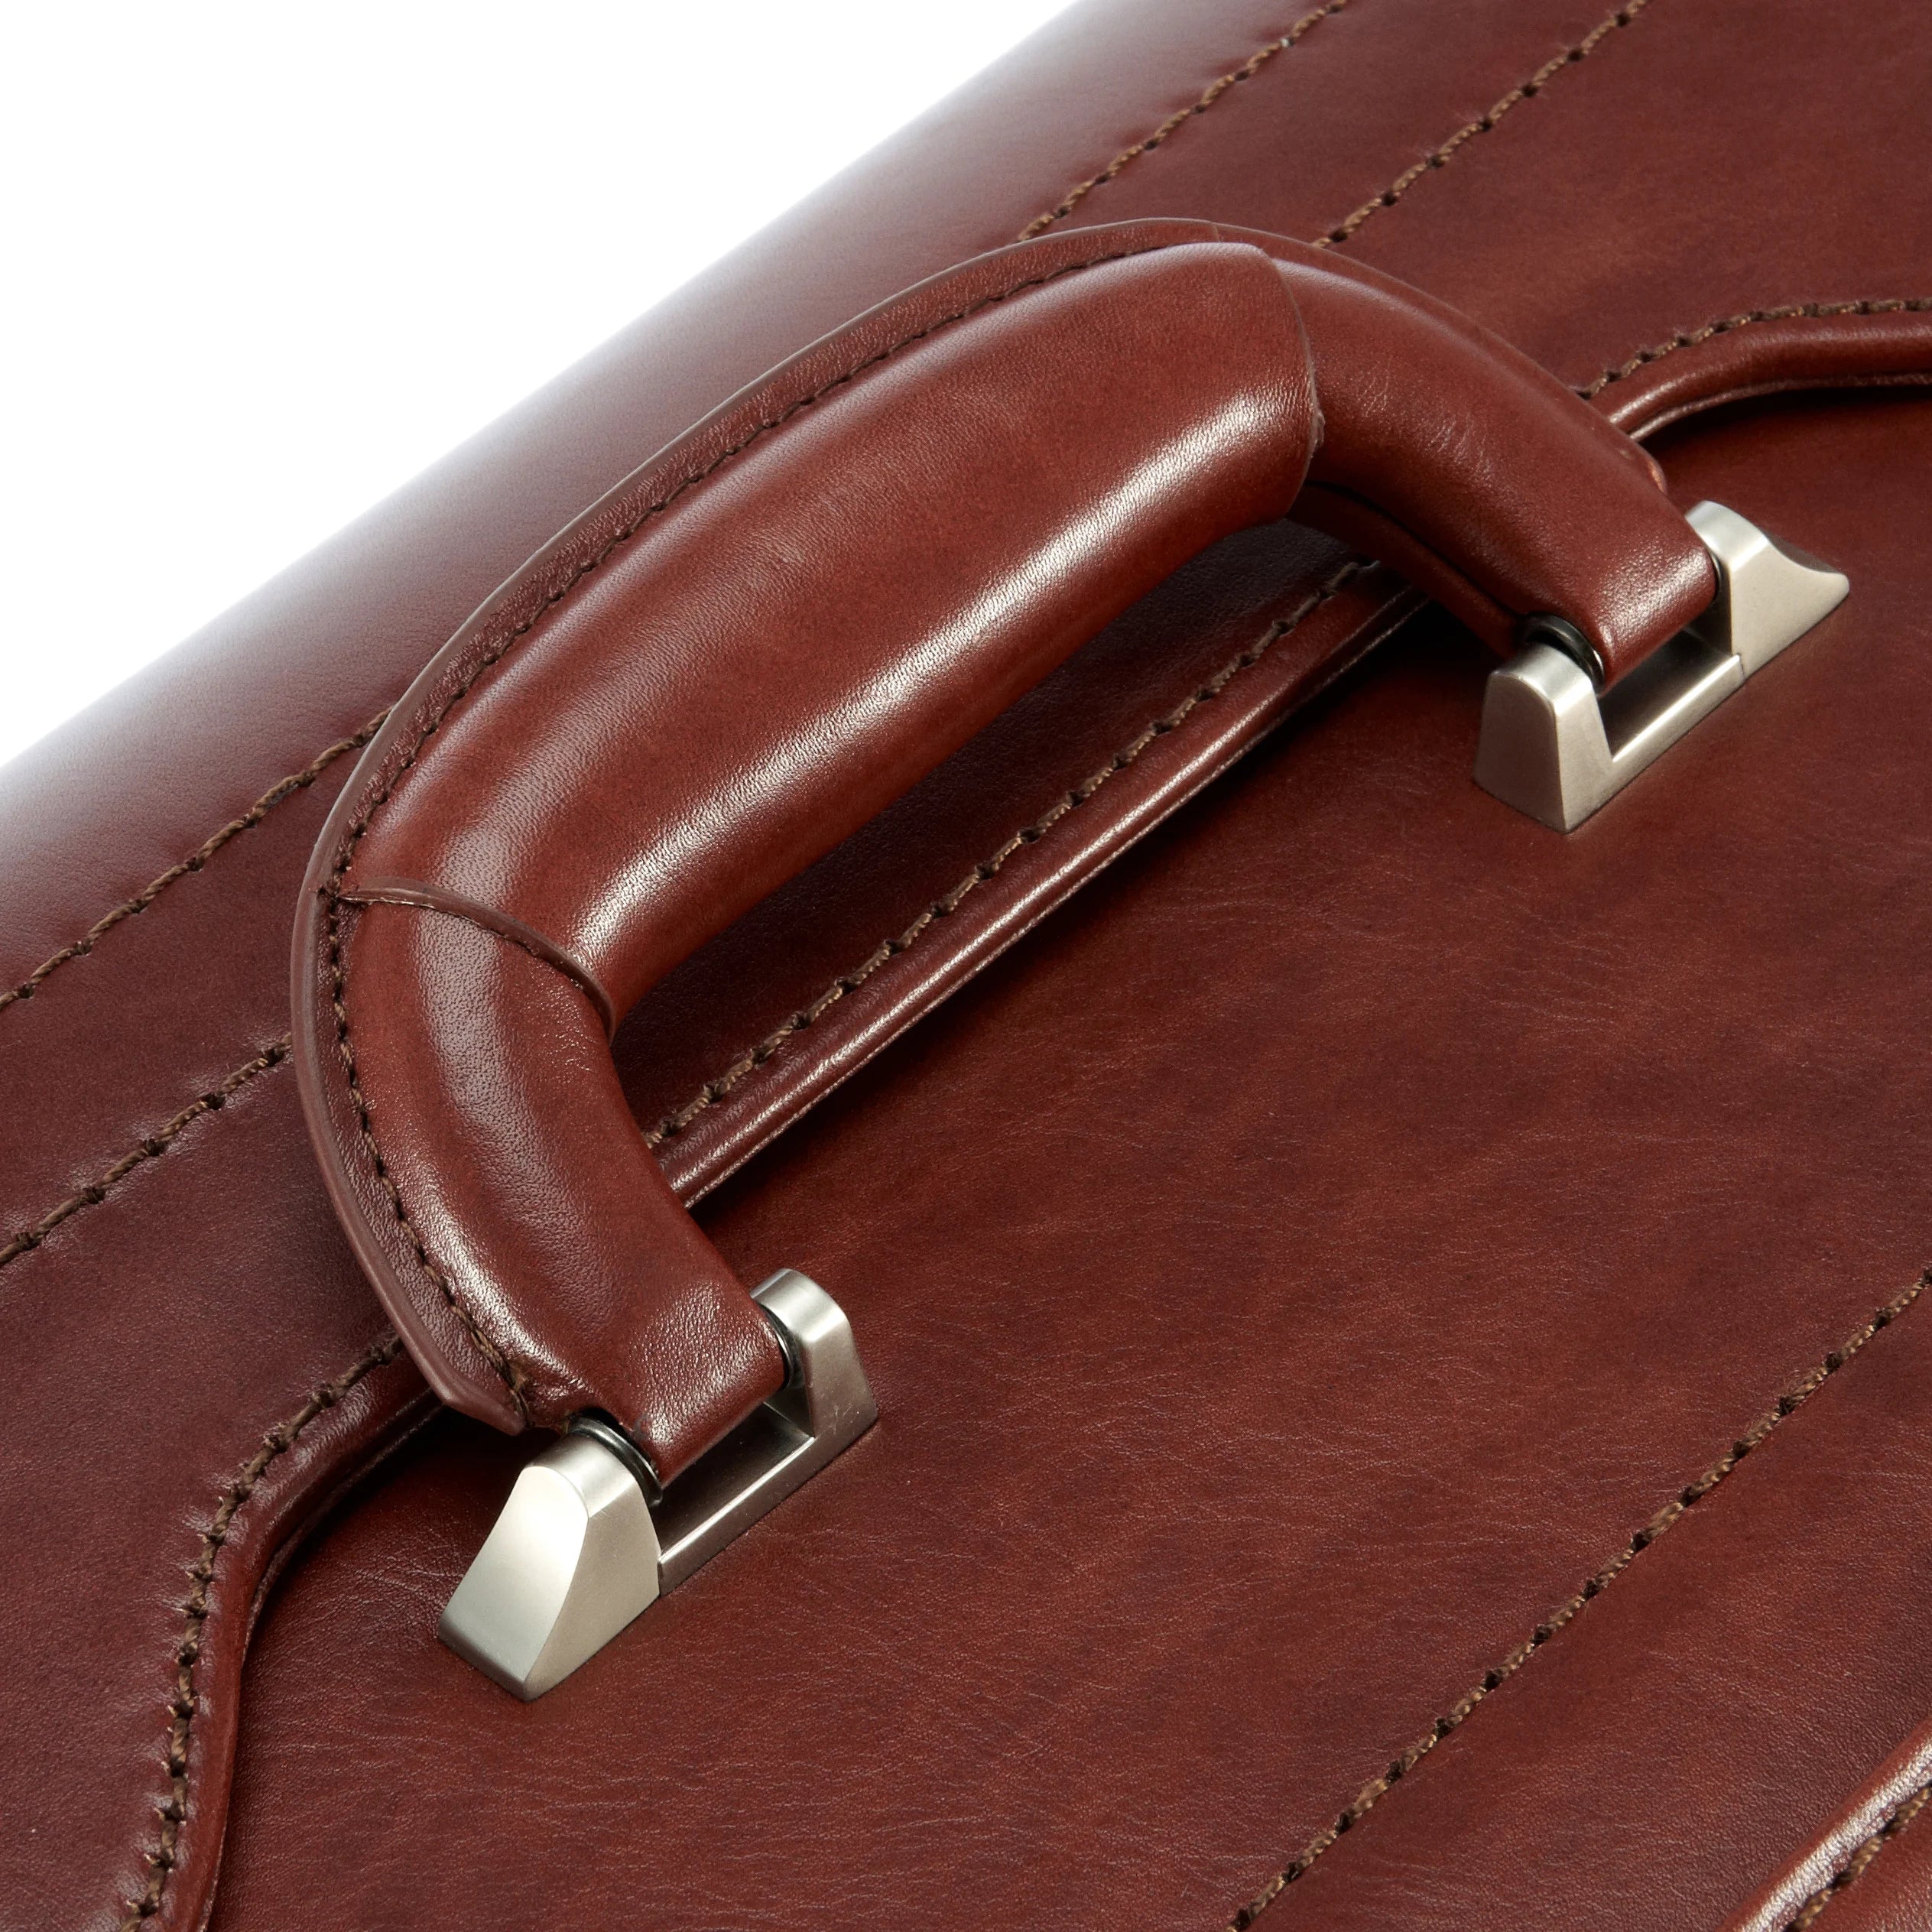 Dermata Business pilot case leather 45 cm - brown